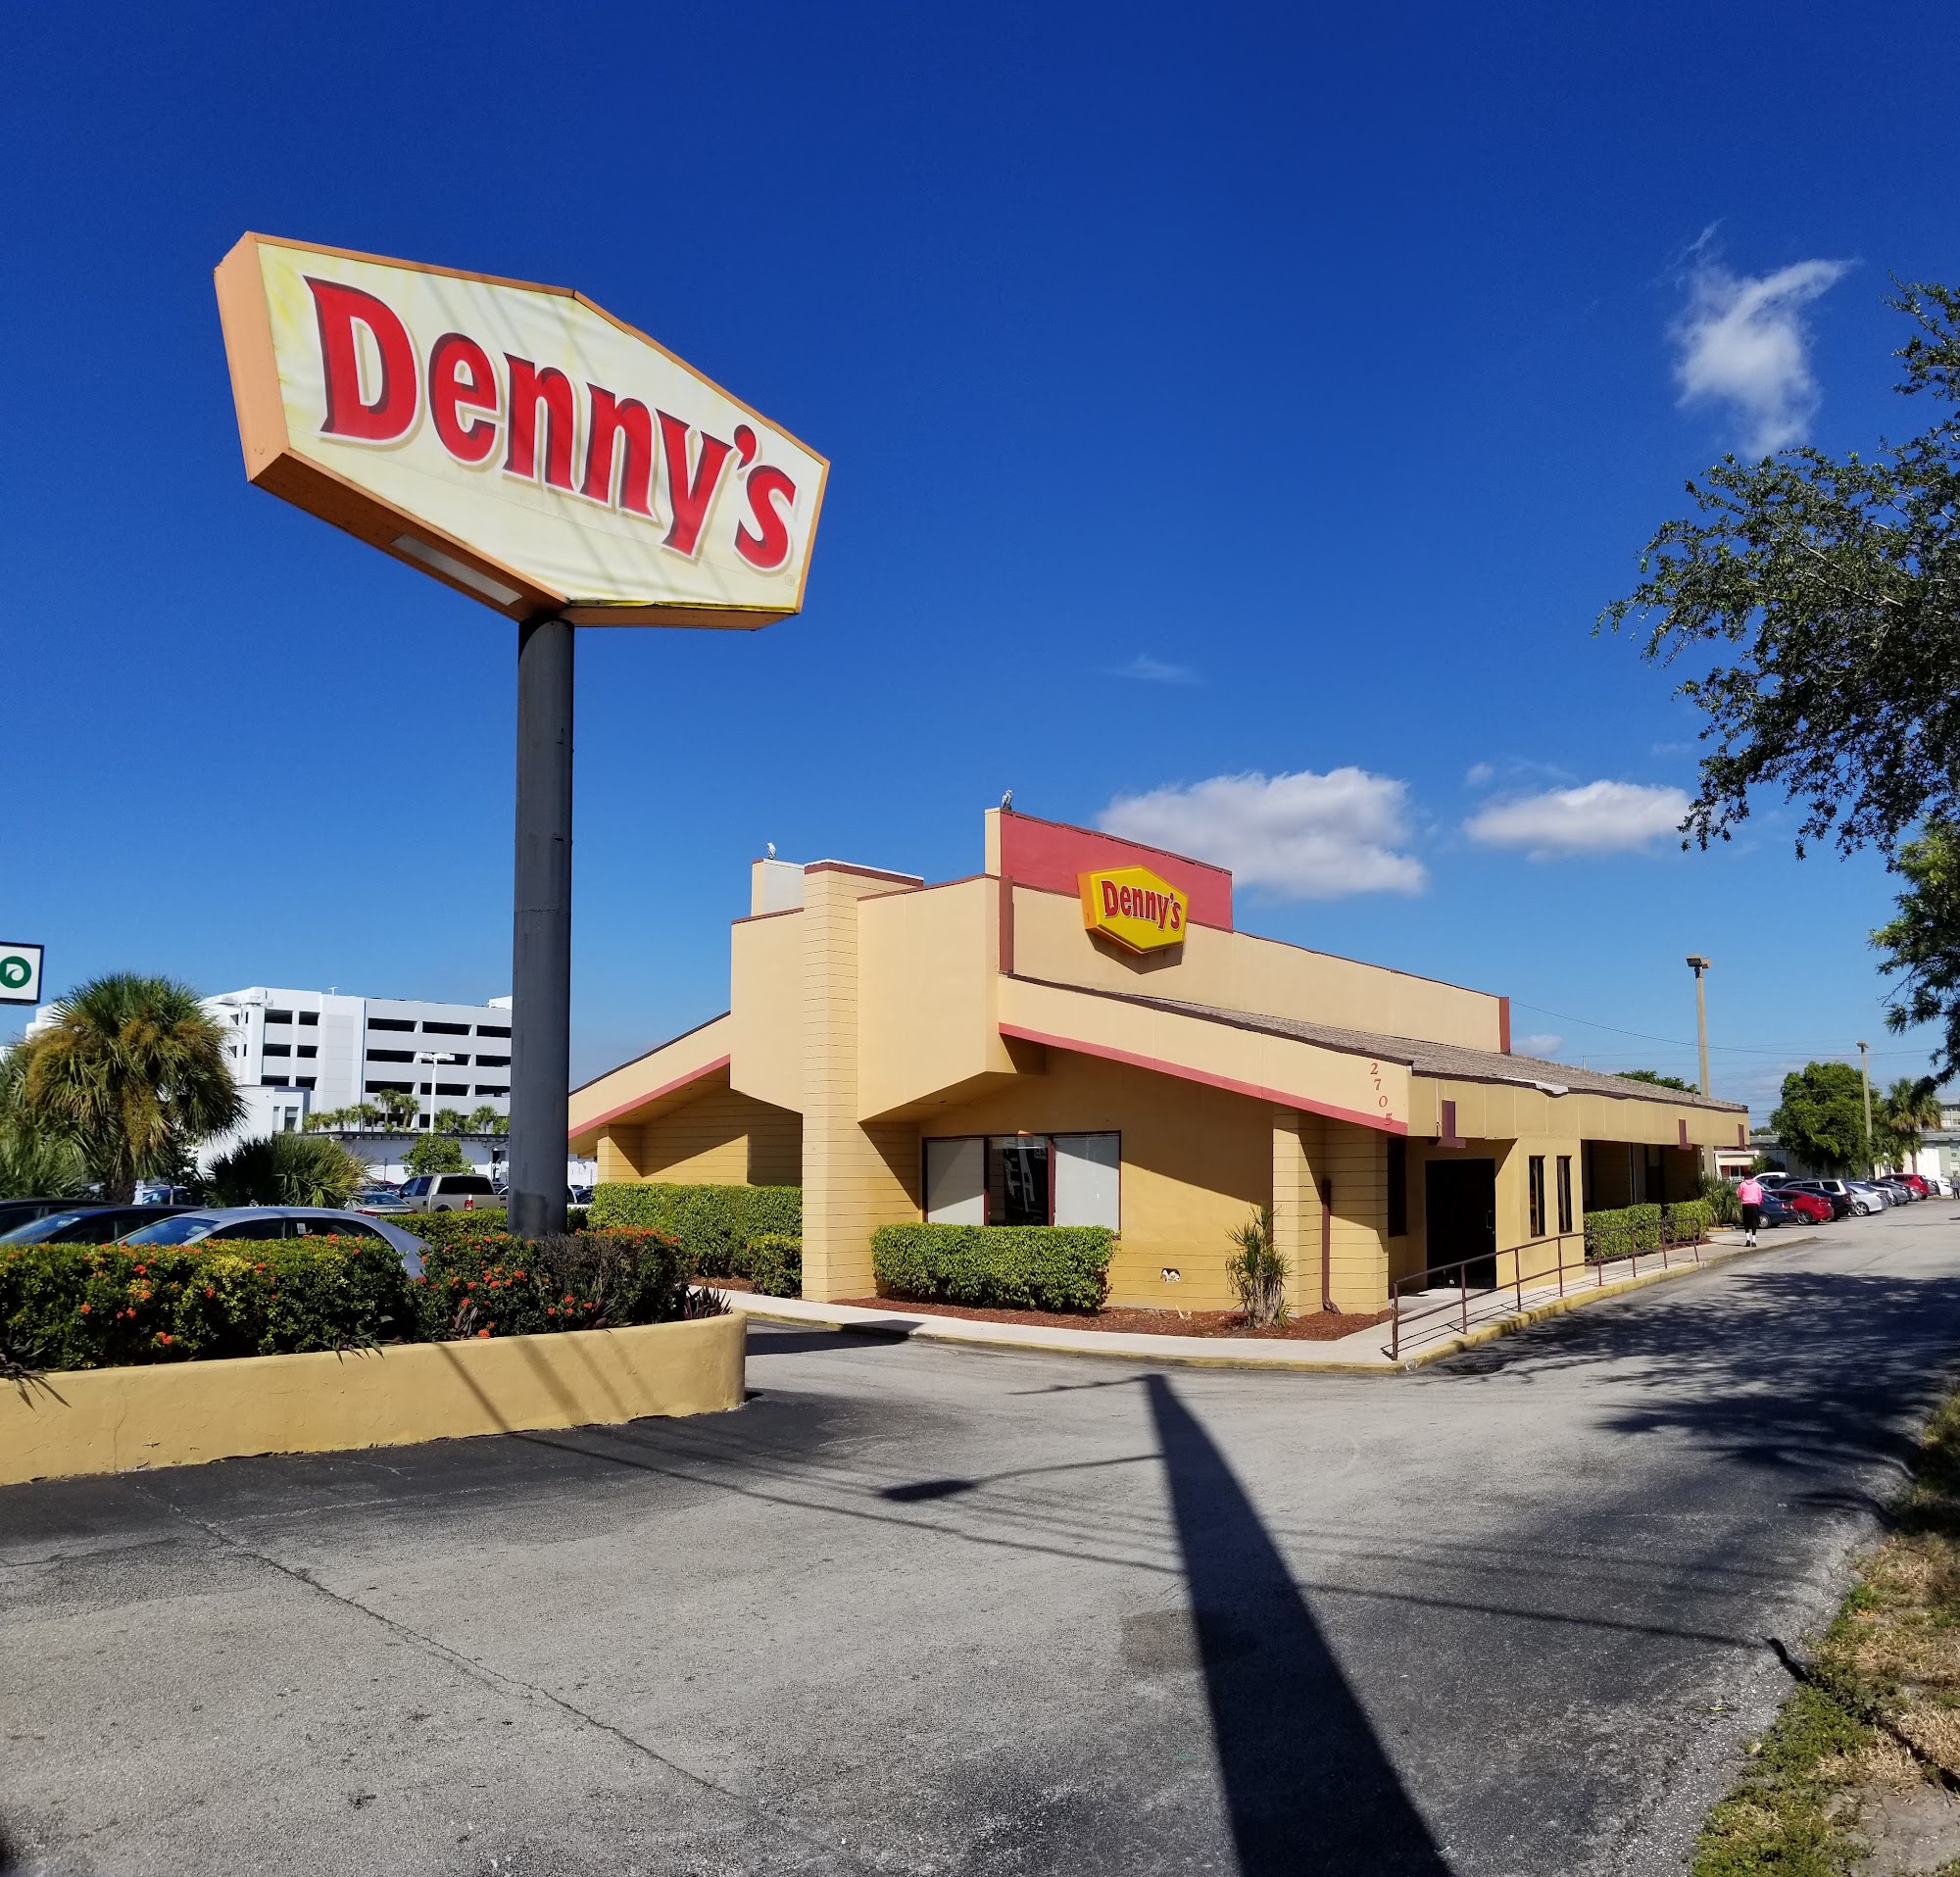 Denny's